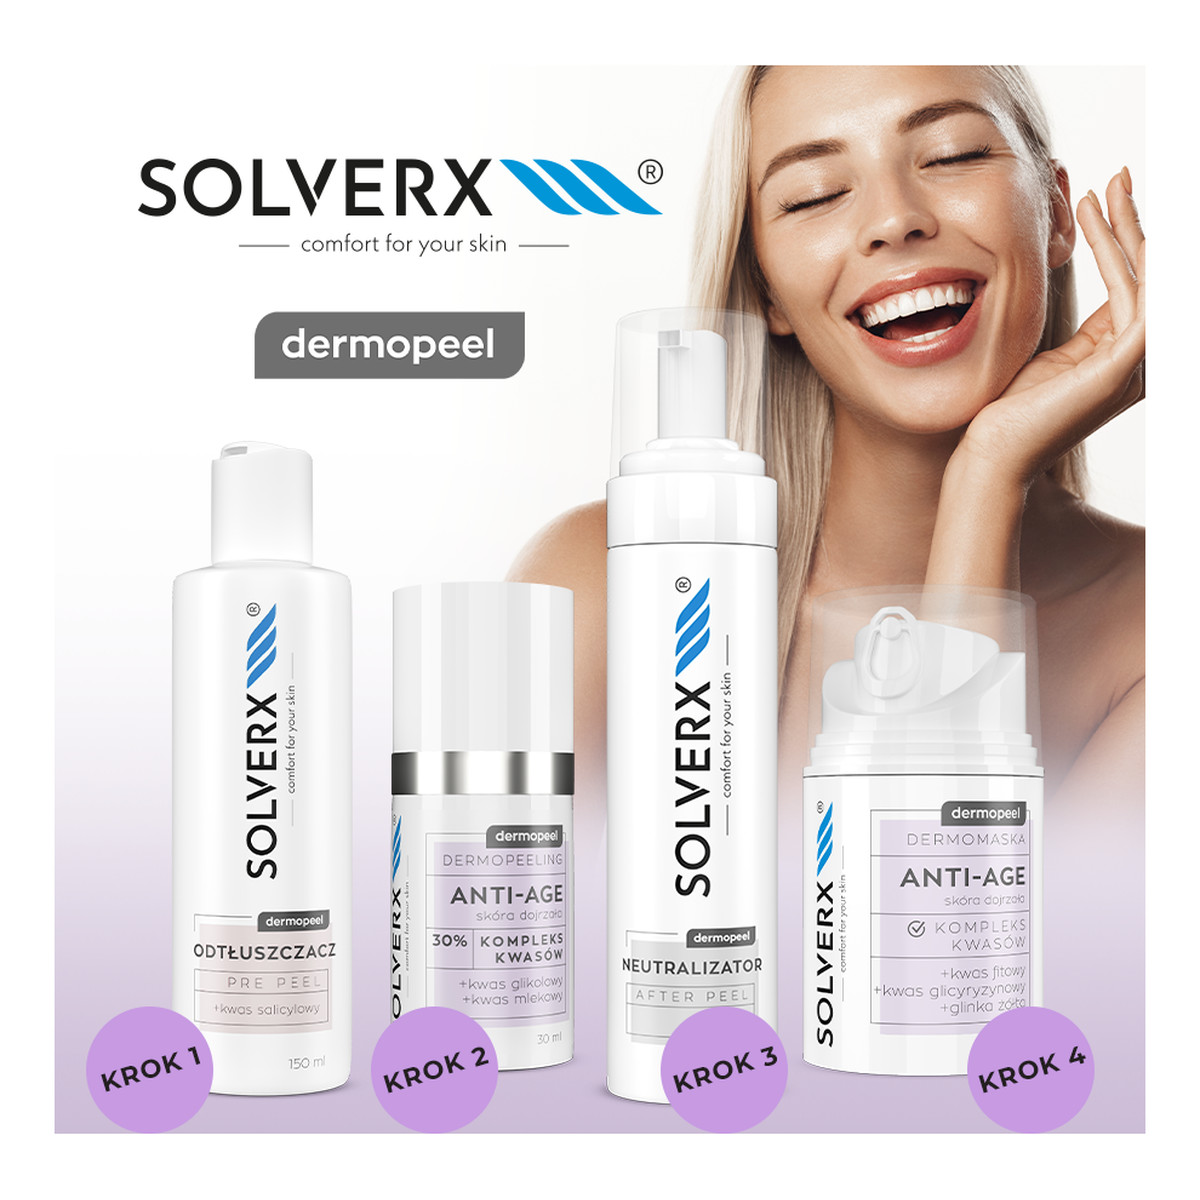 Solverx Dermopeel Dermopeeling Melano - Kompleks Kwasów 30% (migdałowy, jabłkowy, fitowy) 30ml